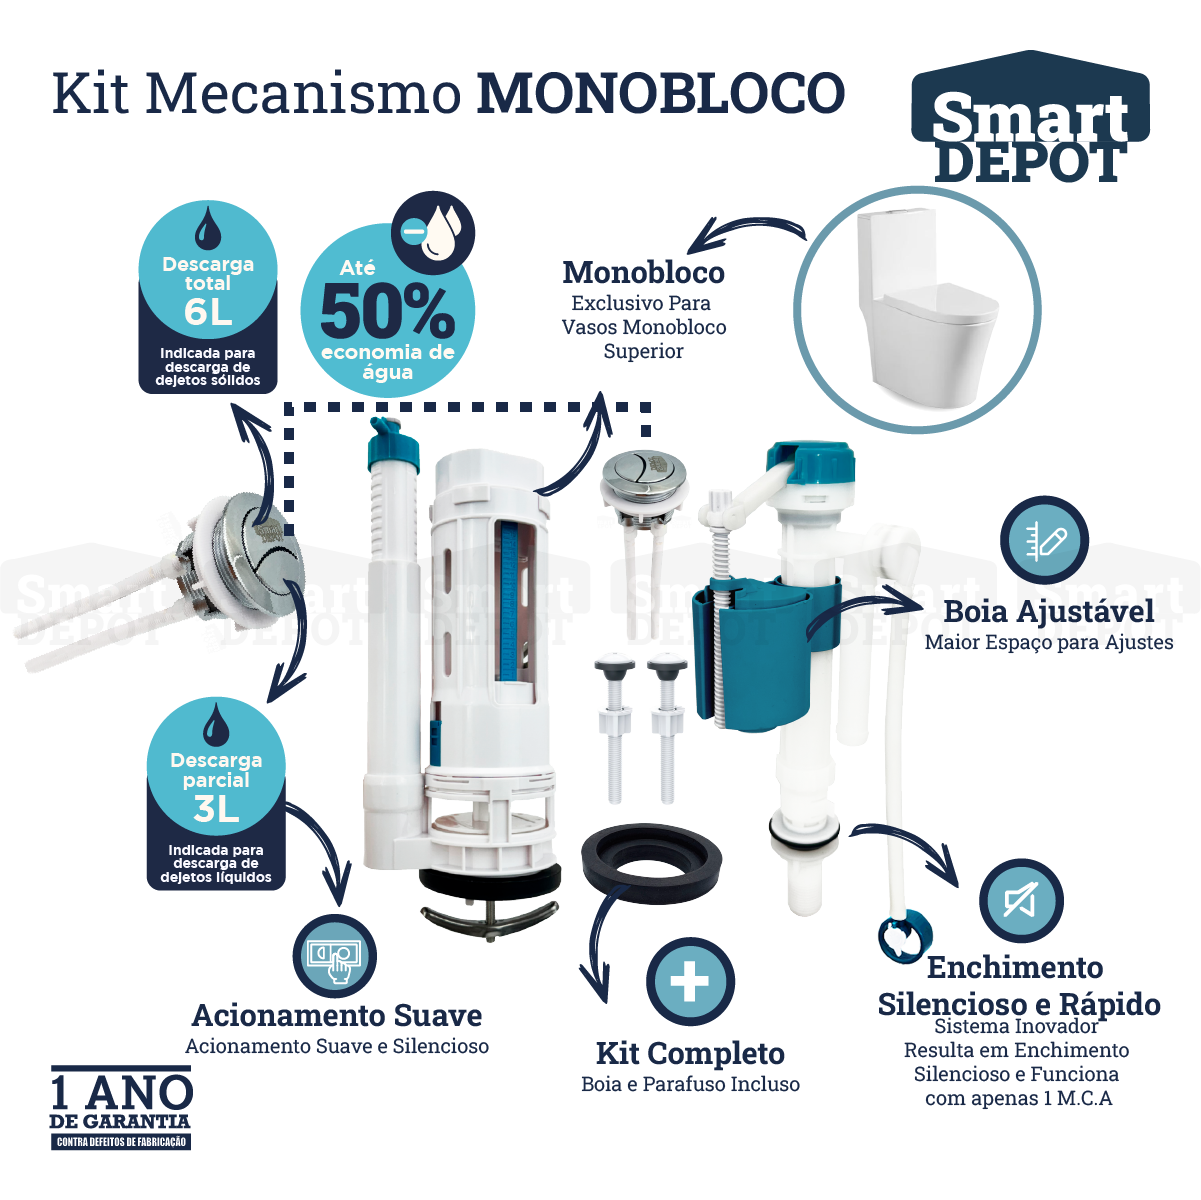 Kit Mecanismo de Descarga Caixa Acoplada Monobloco Completo Smart Depot com Botão Superior Duplo - 2